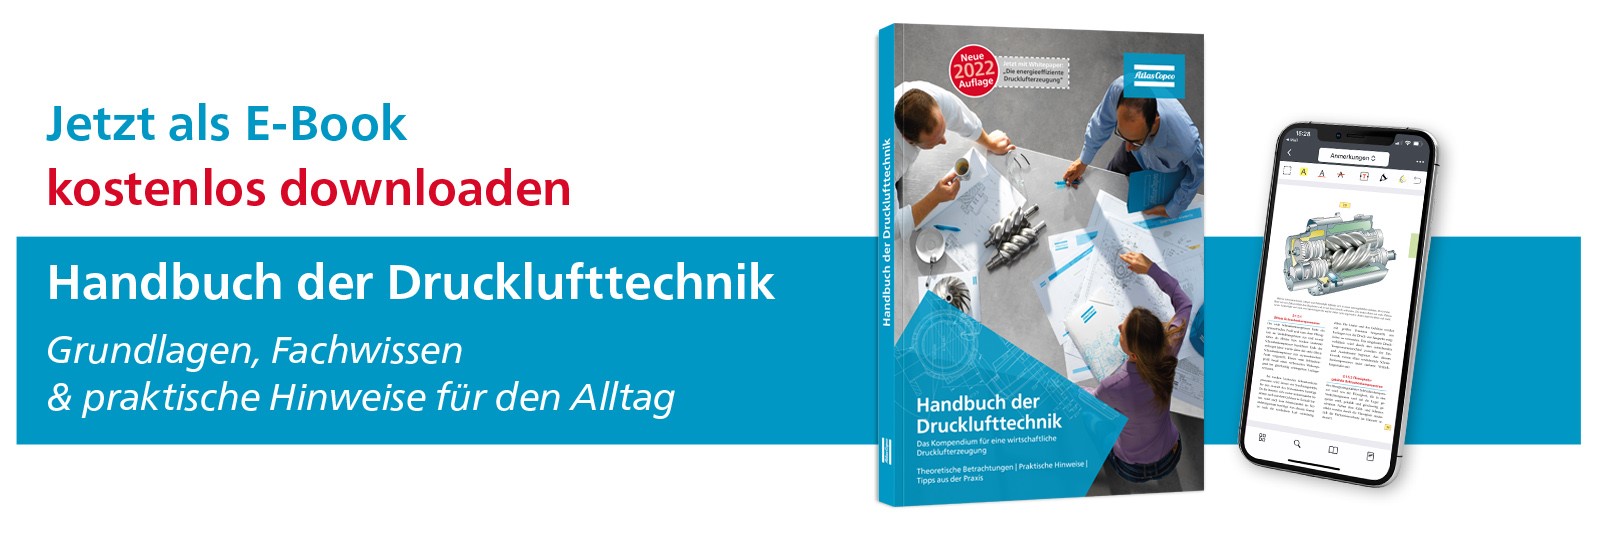 Handbuch Drucklufttechnik Banner Ebook.jpeg